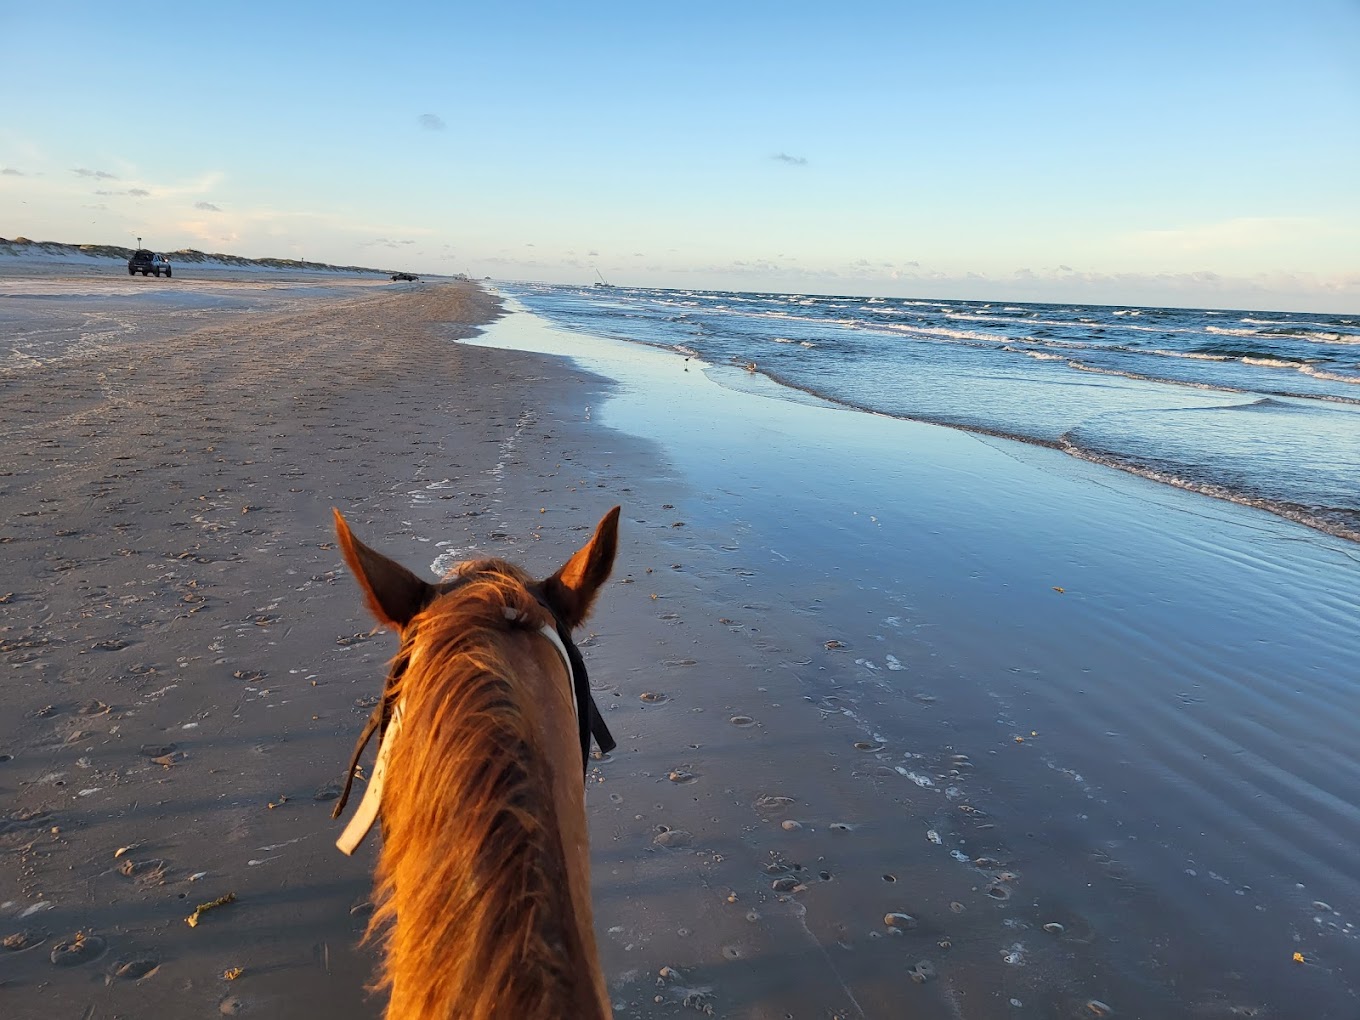 horses on the beach